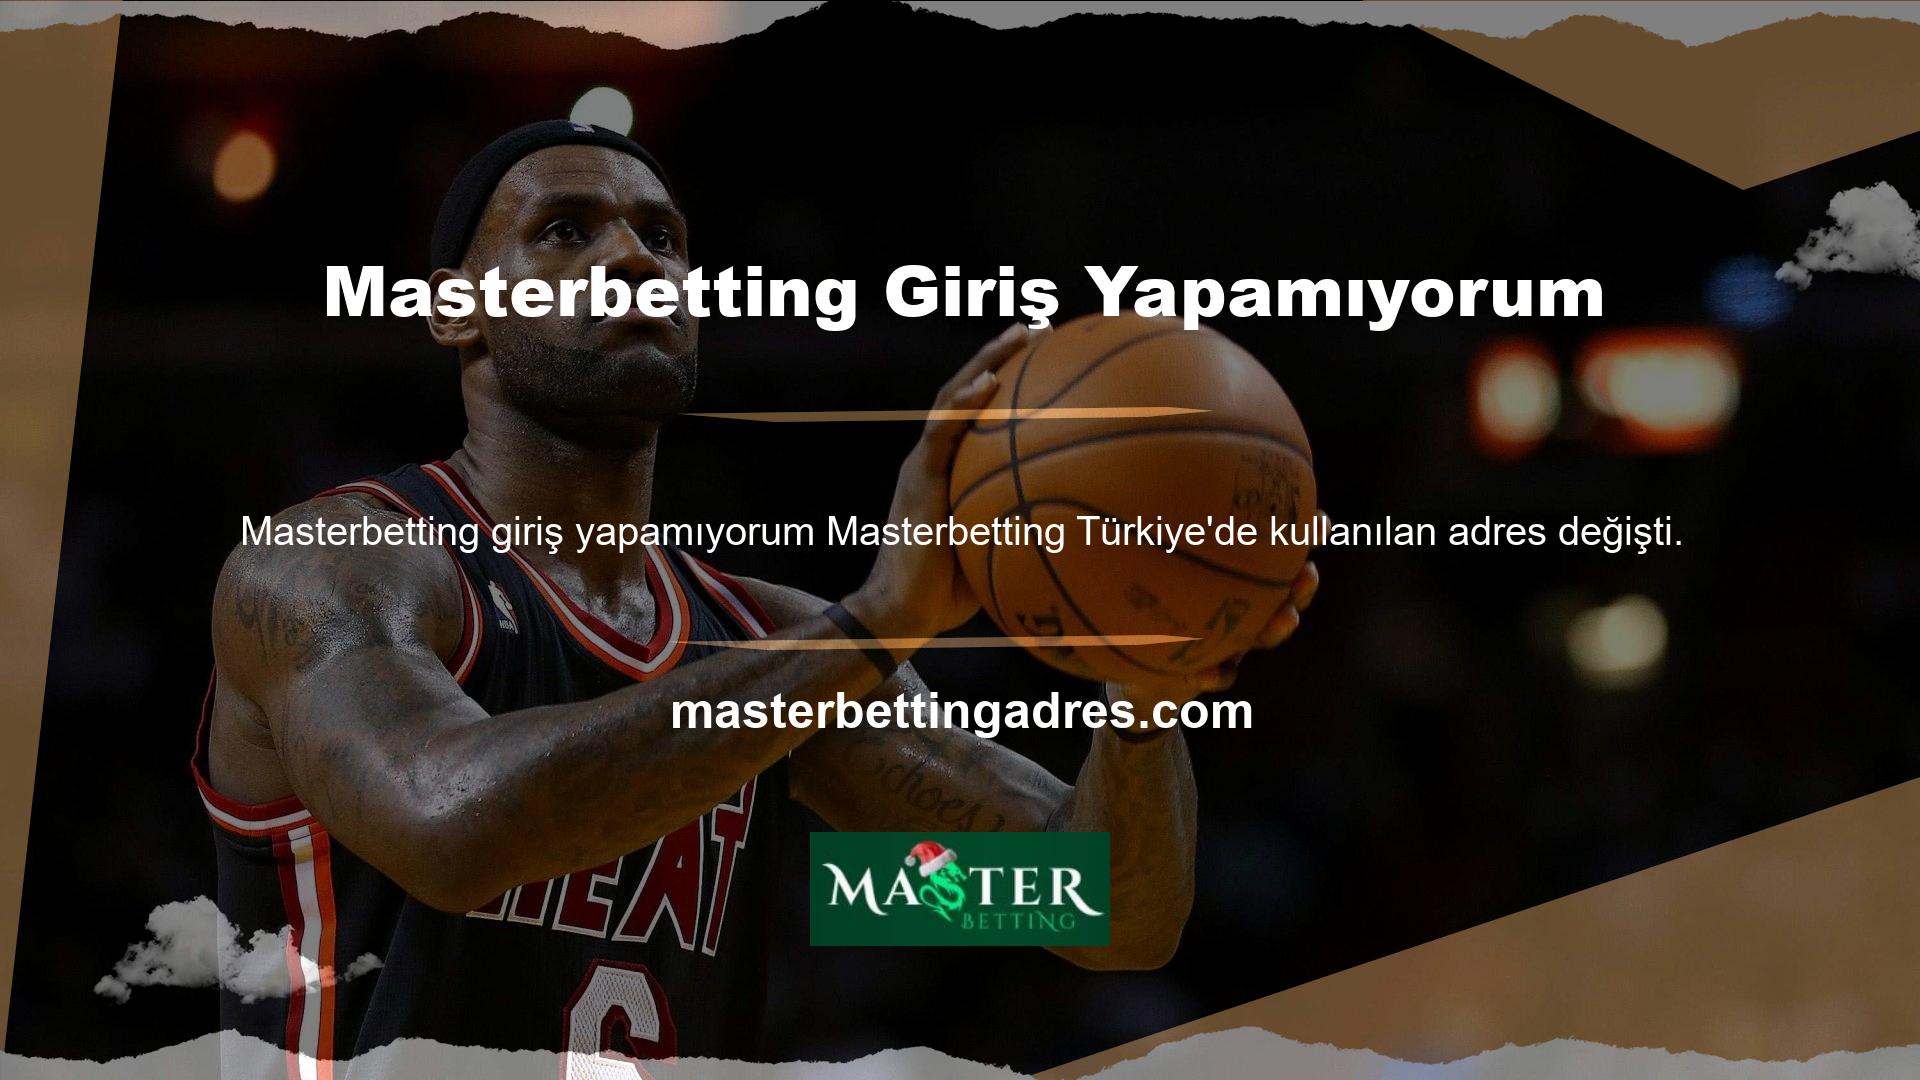 Yeni Masterbetting giriş adresi bu sitenin Türkiye'de ve internette aktif olarak kullandığı adrestir